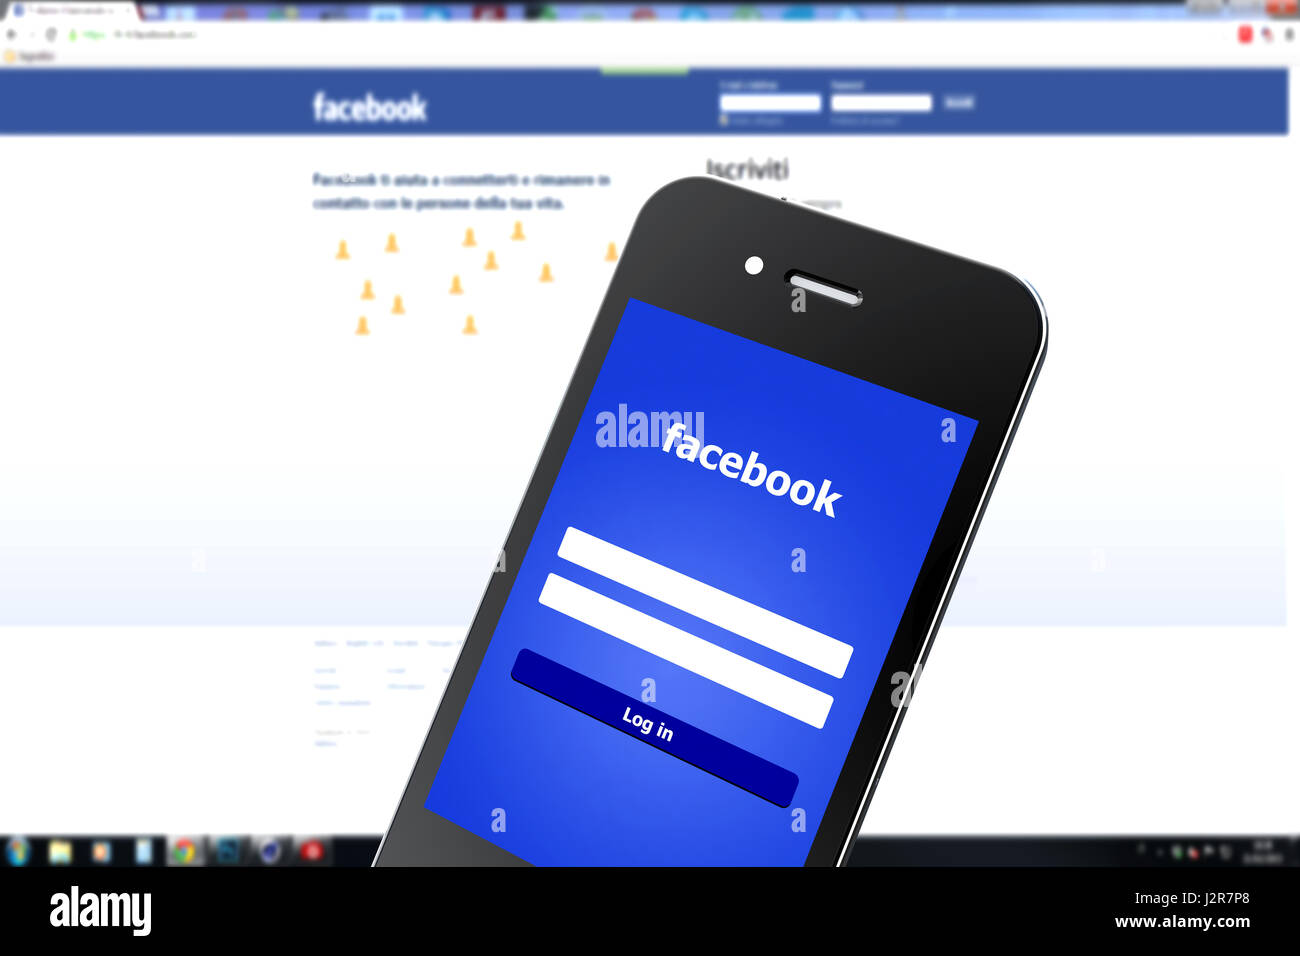 Facebook login webview